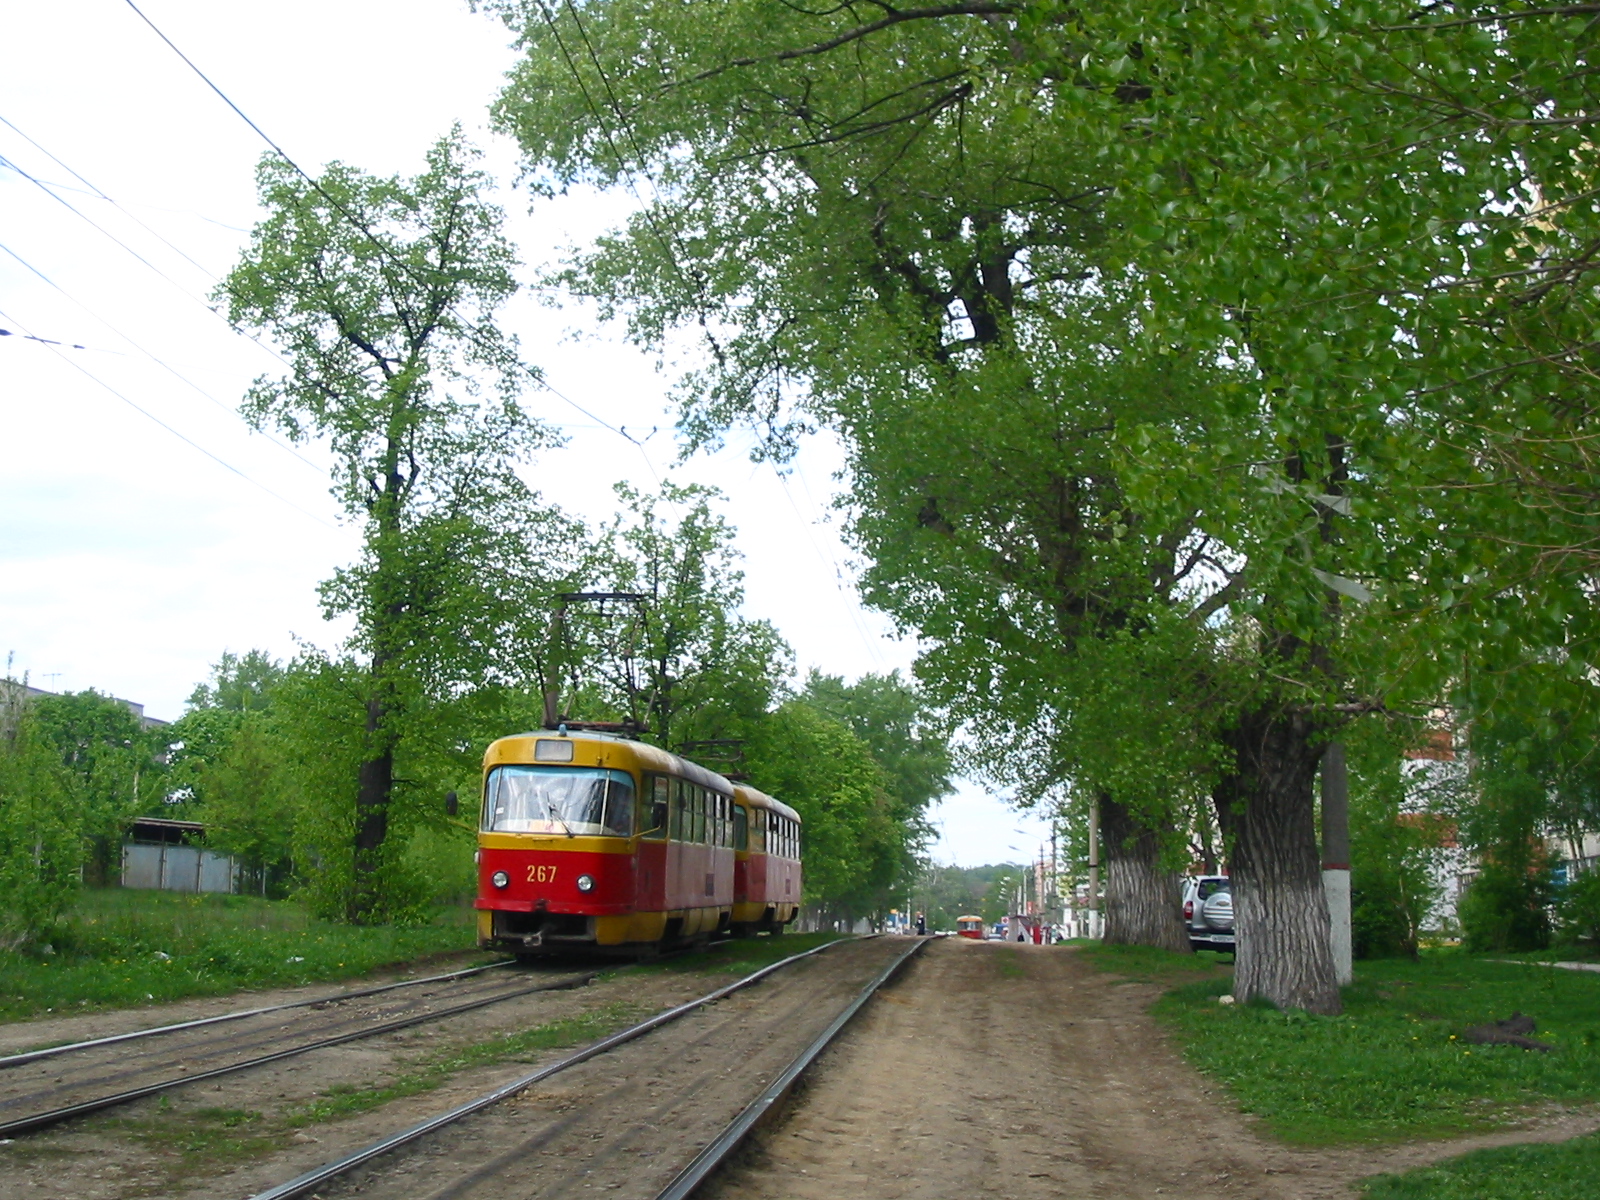 Трамвай Tatra T3 весной под зелёными деревьями